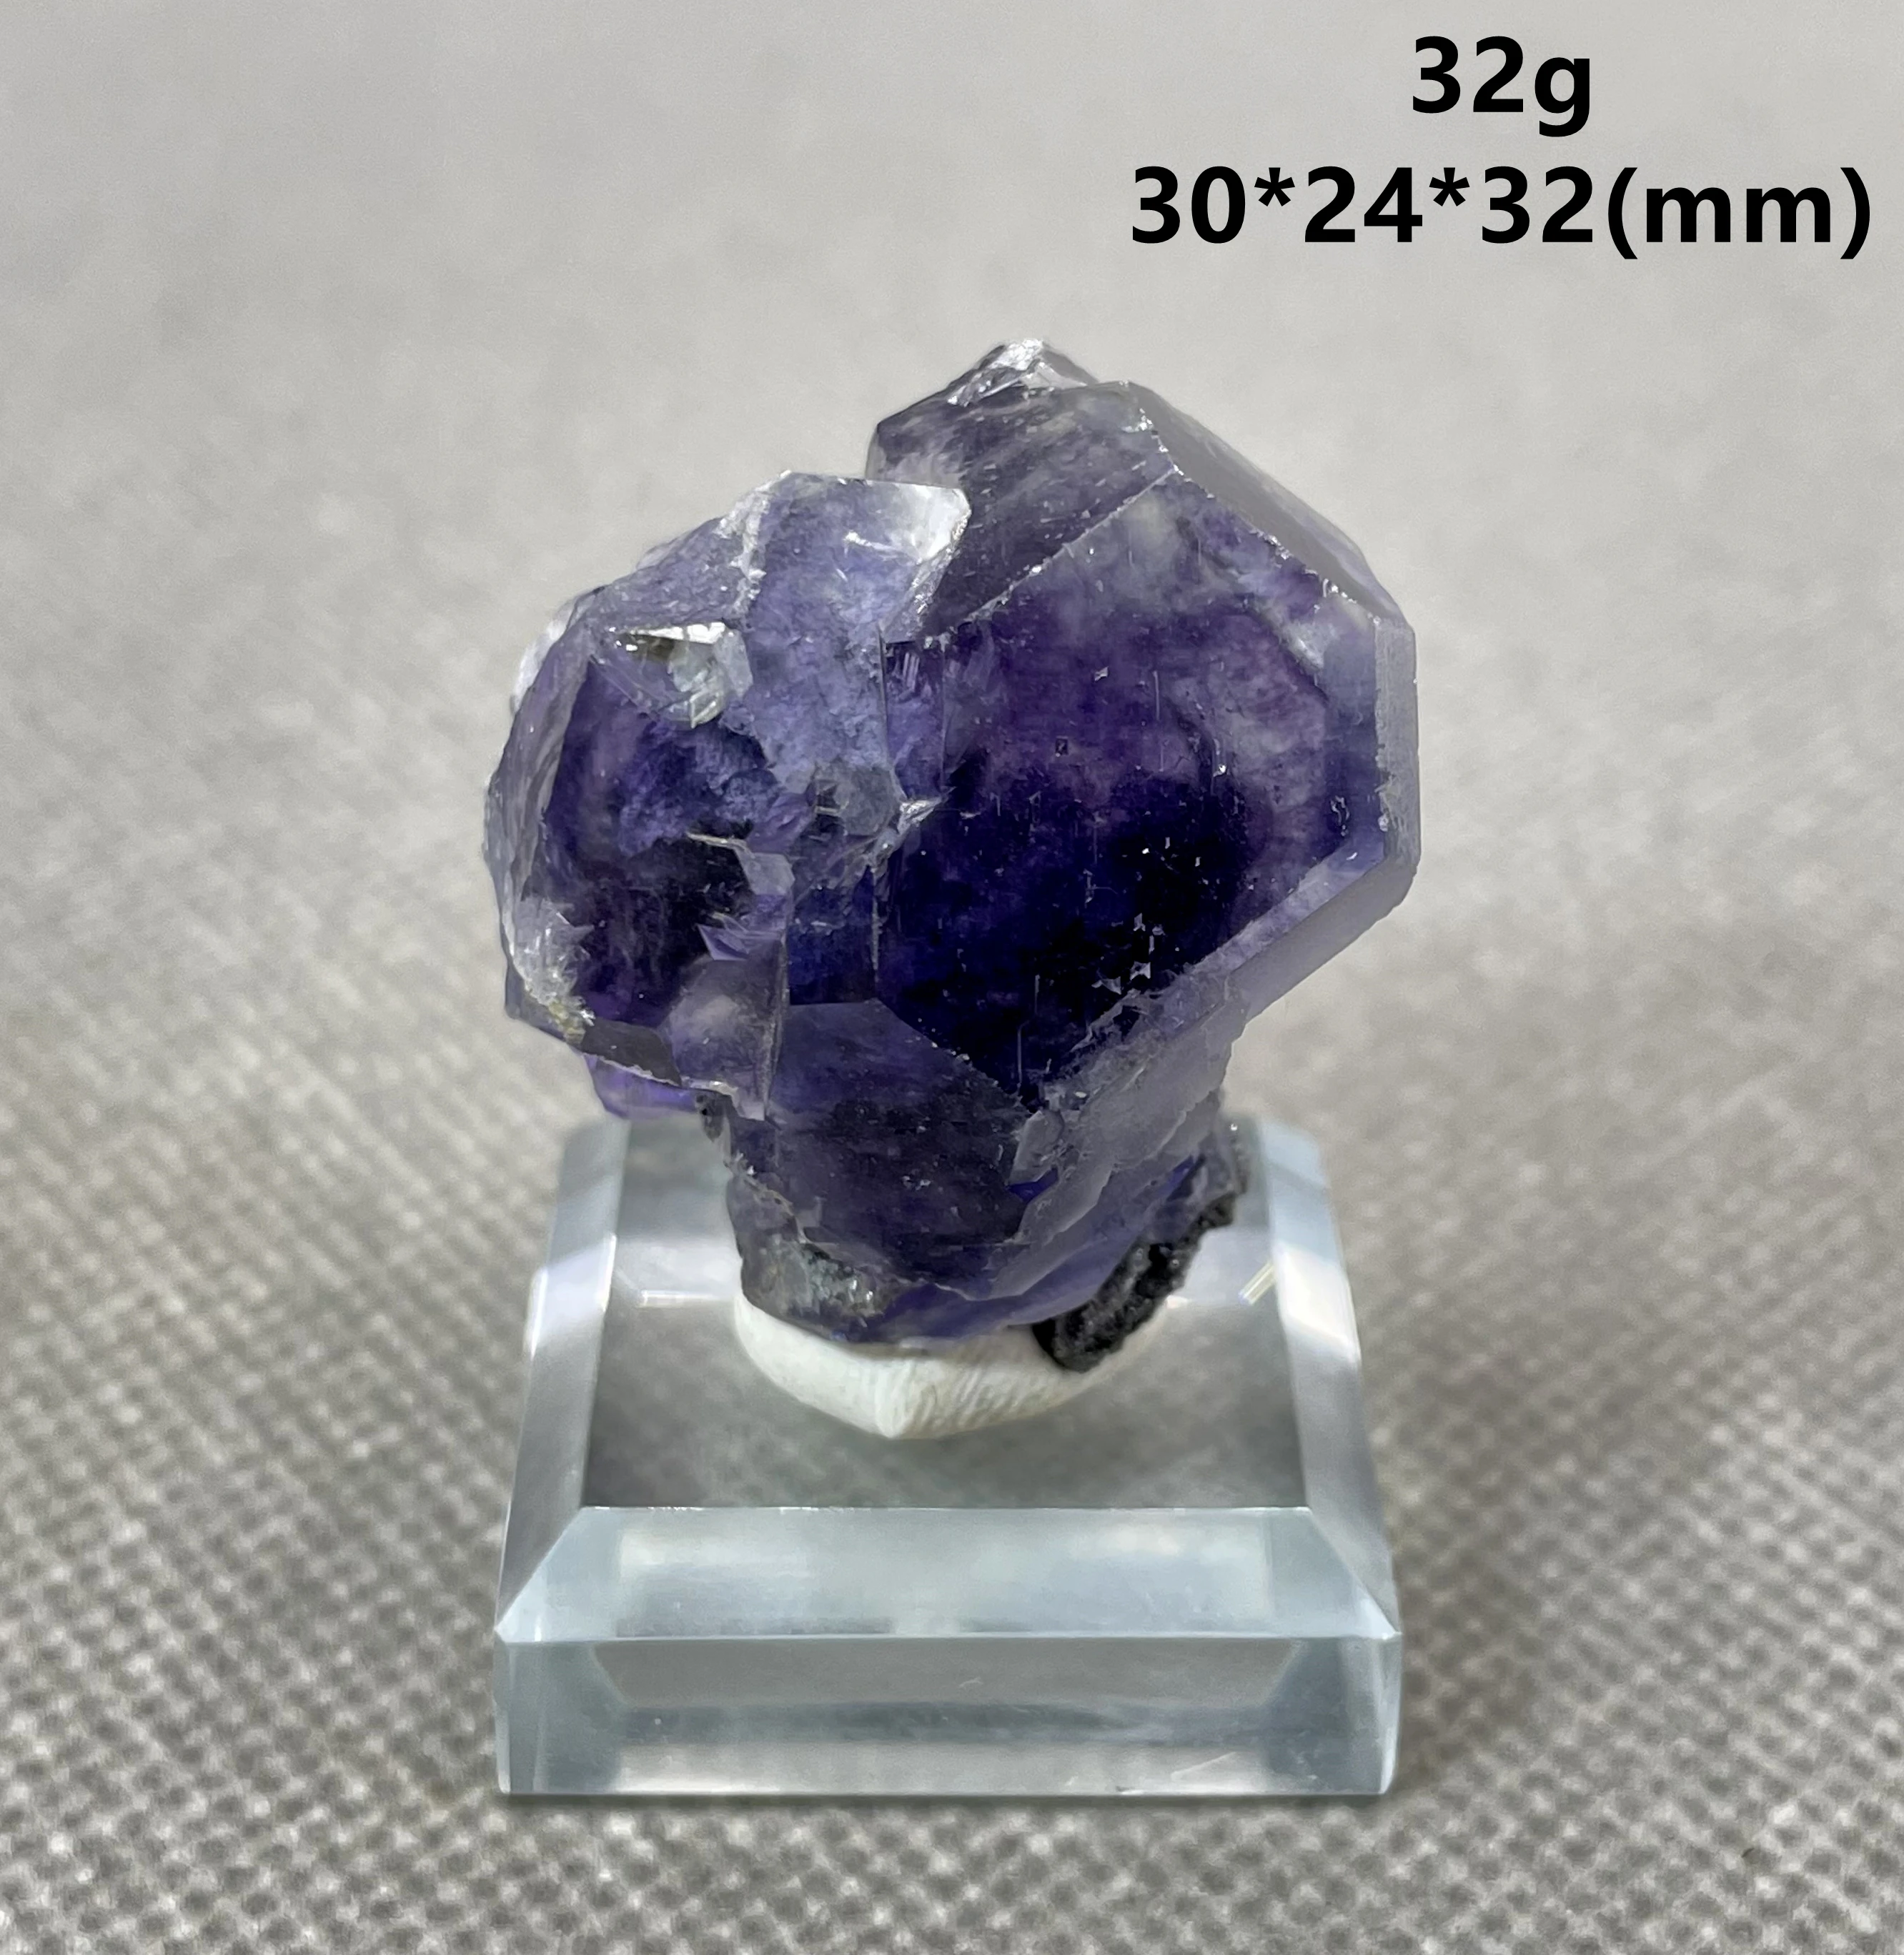 Yeni! En iyi! % 100% doğal çok amaçlı tanzanit mavi mor florit küme mineral örnekleri mücevher seviye taşlar ve kristaller